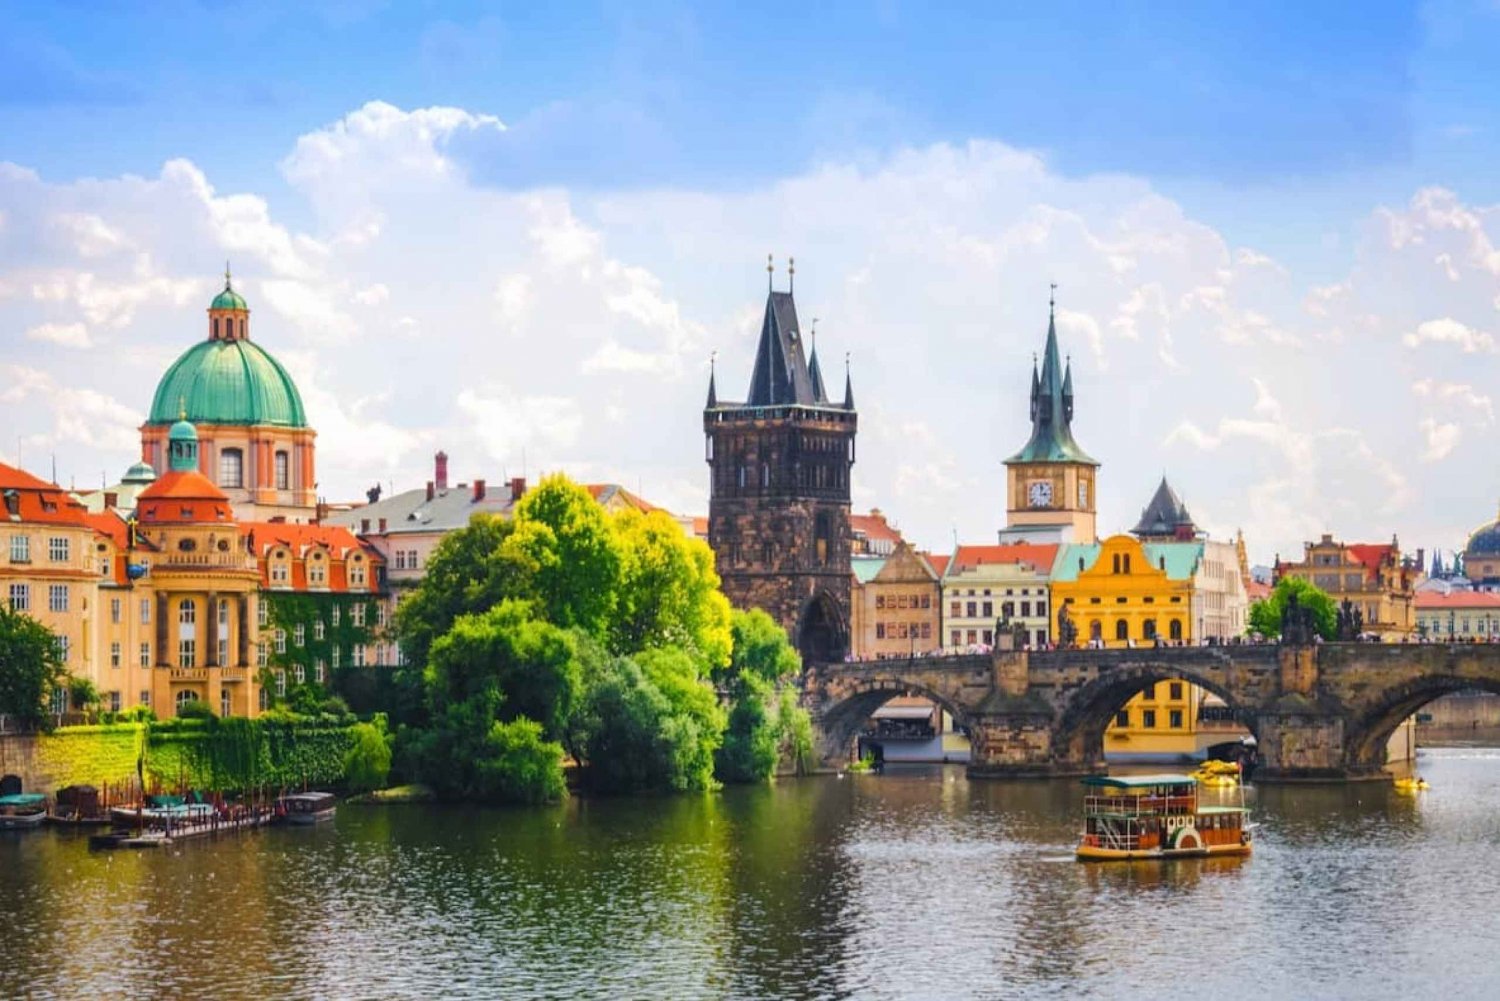 Privat heldagsutflykt från Wien till Prag